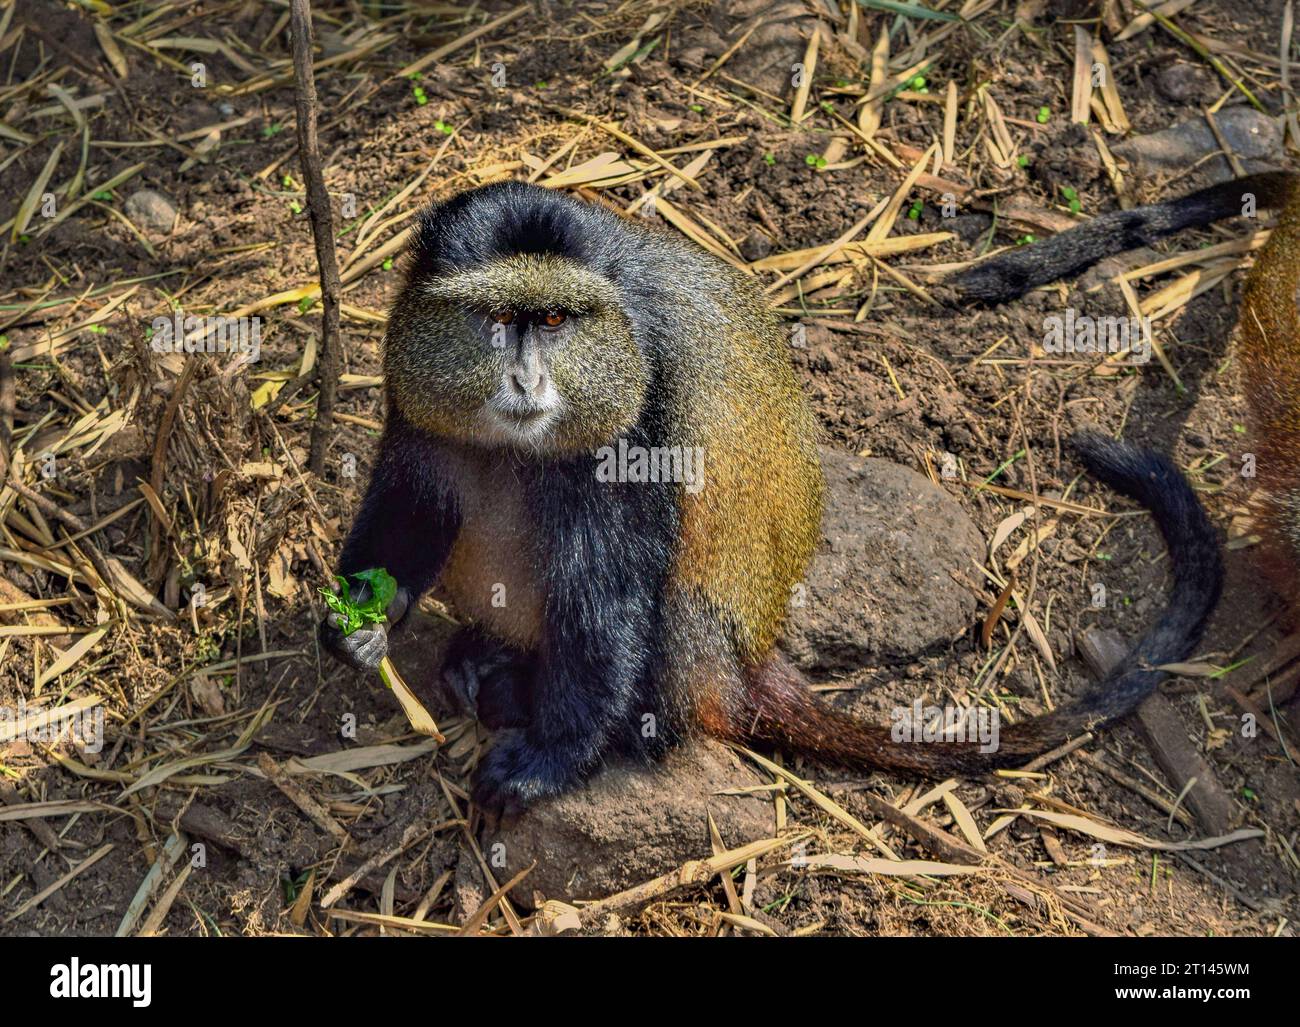 Prise de vue en grand angle montrant un singe doré en Ouganda, en Afrique Banque D'Images